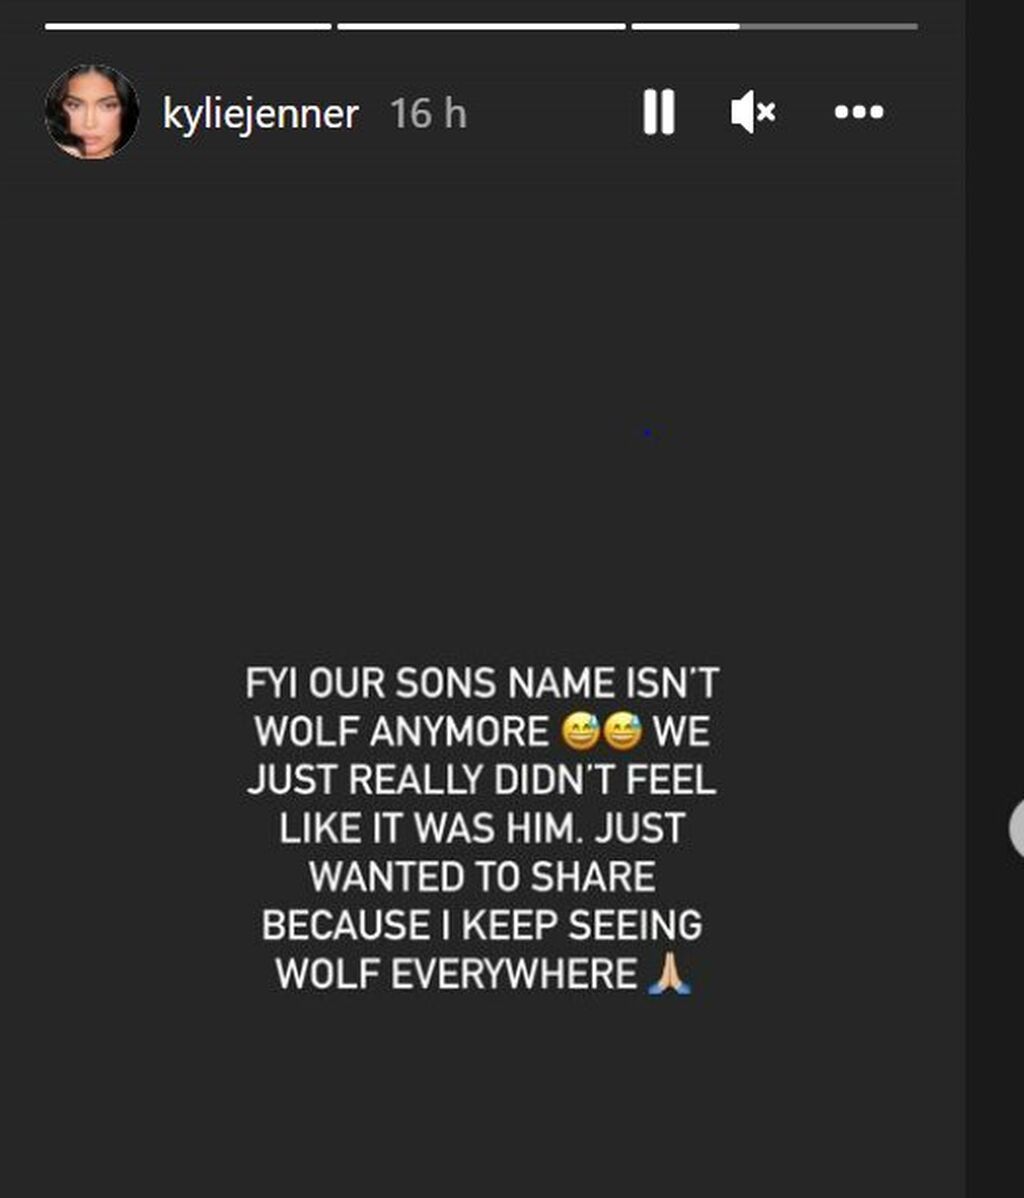 La historia de Instagram donde Kylie Jenner anuncia el cambio de nombre